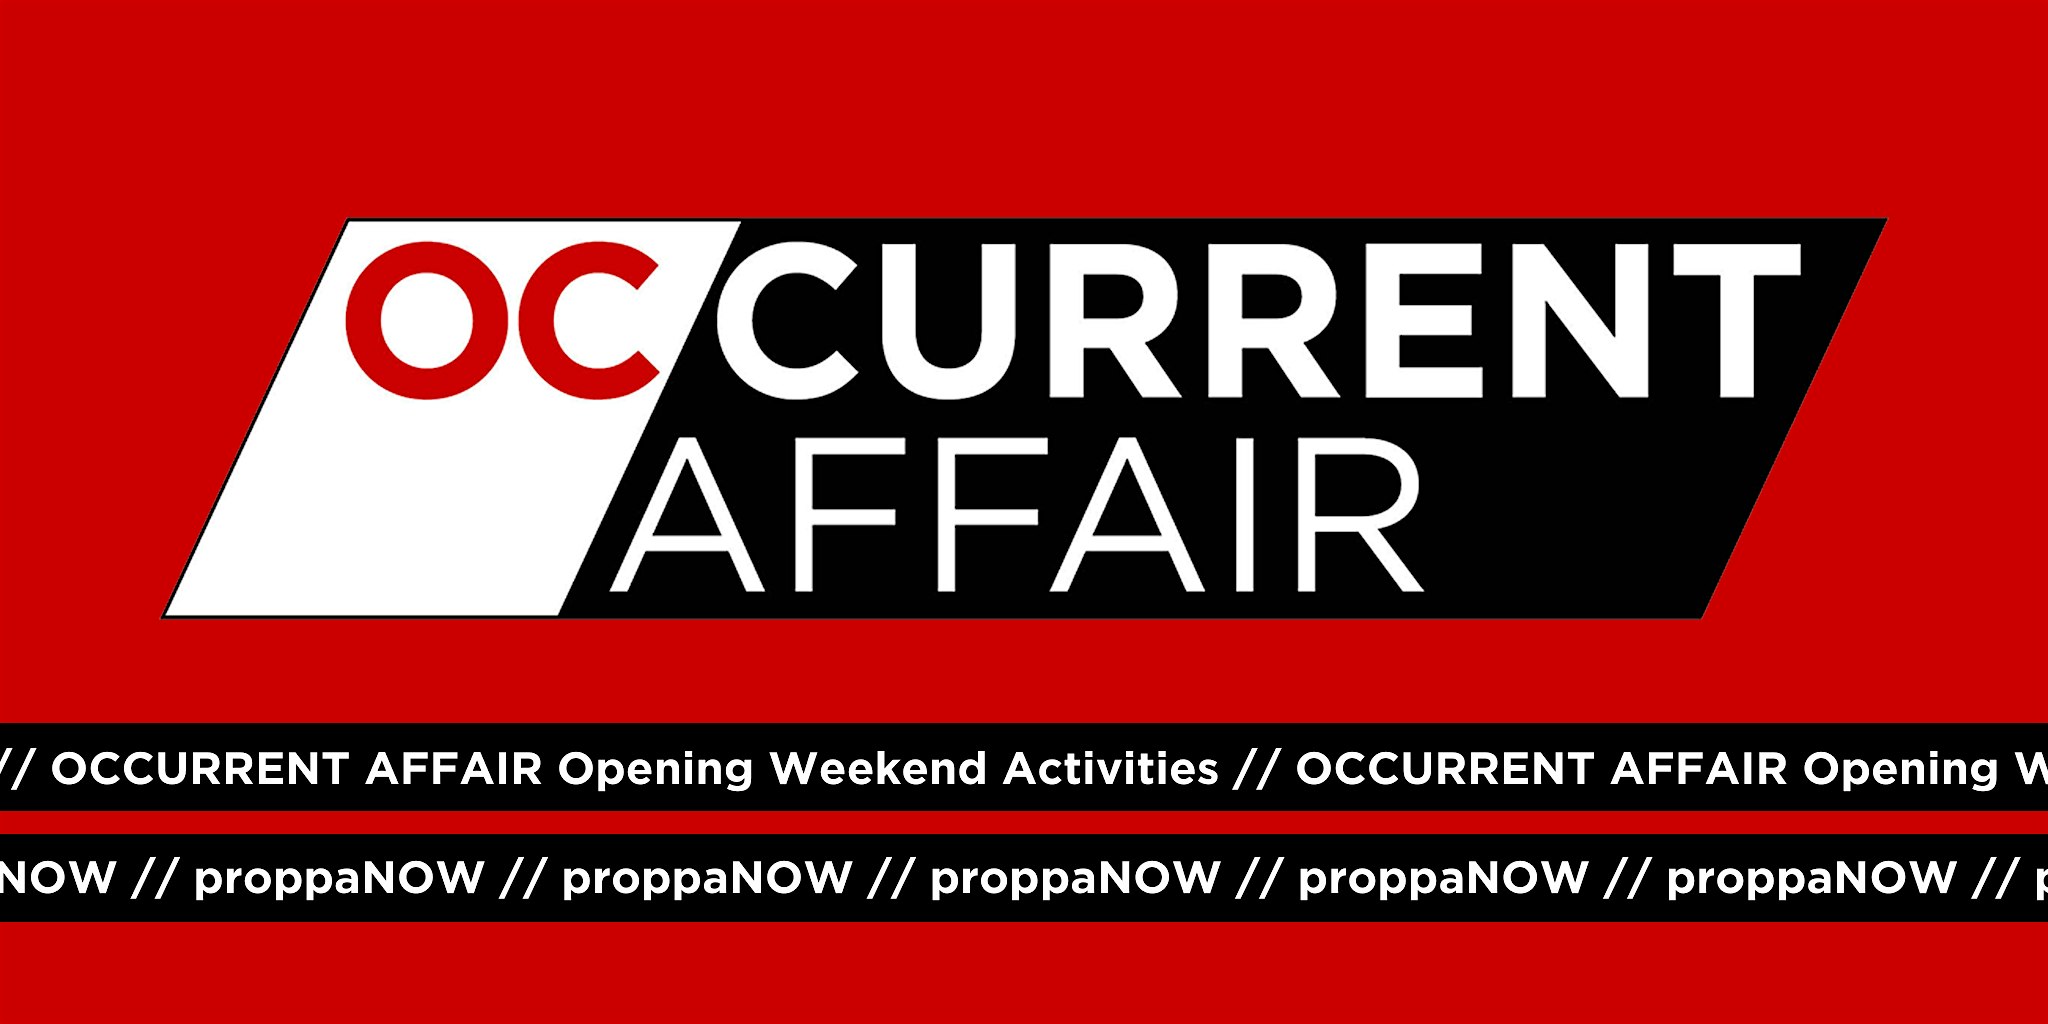 OCCURRENT AFFAIR Opening Weekend Activities